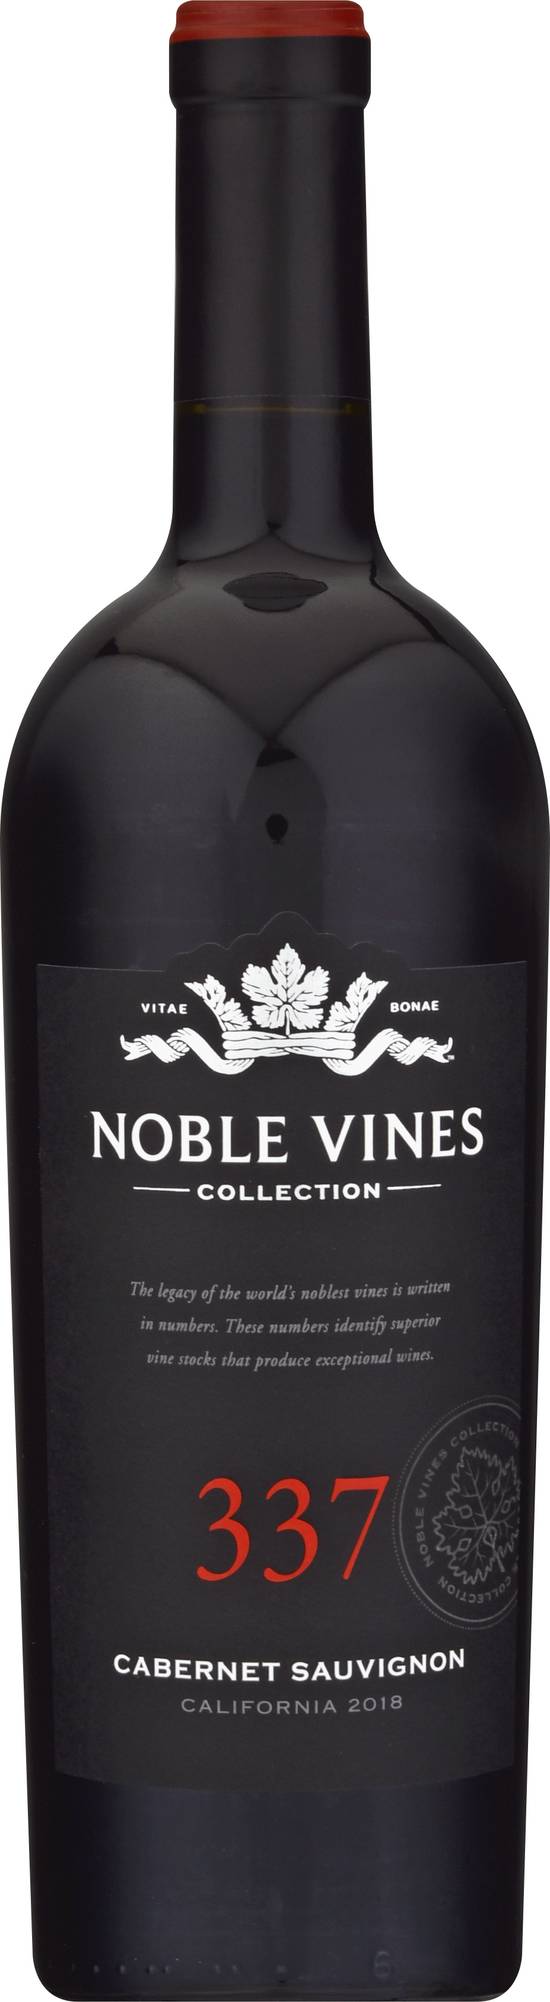 Noble Vines 337 Cabernet Sauvignon Red Wine (750 ml)